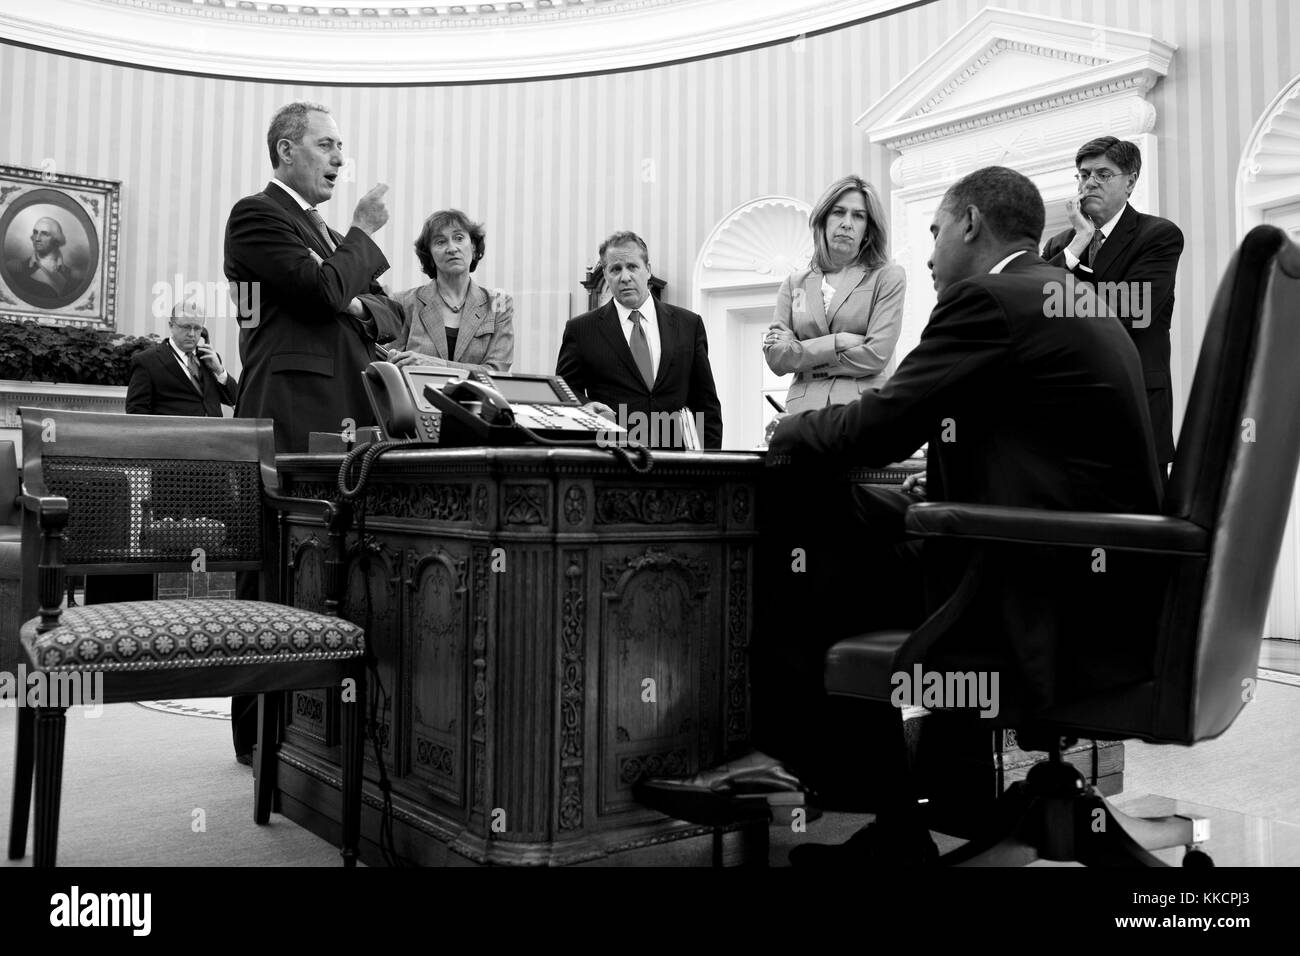 Barack obama michelle obama Black and White Stock Photos & Images - Alamy